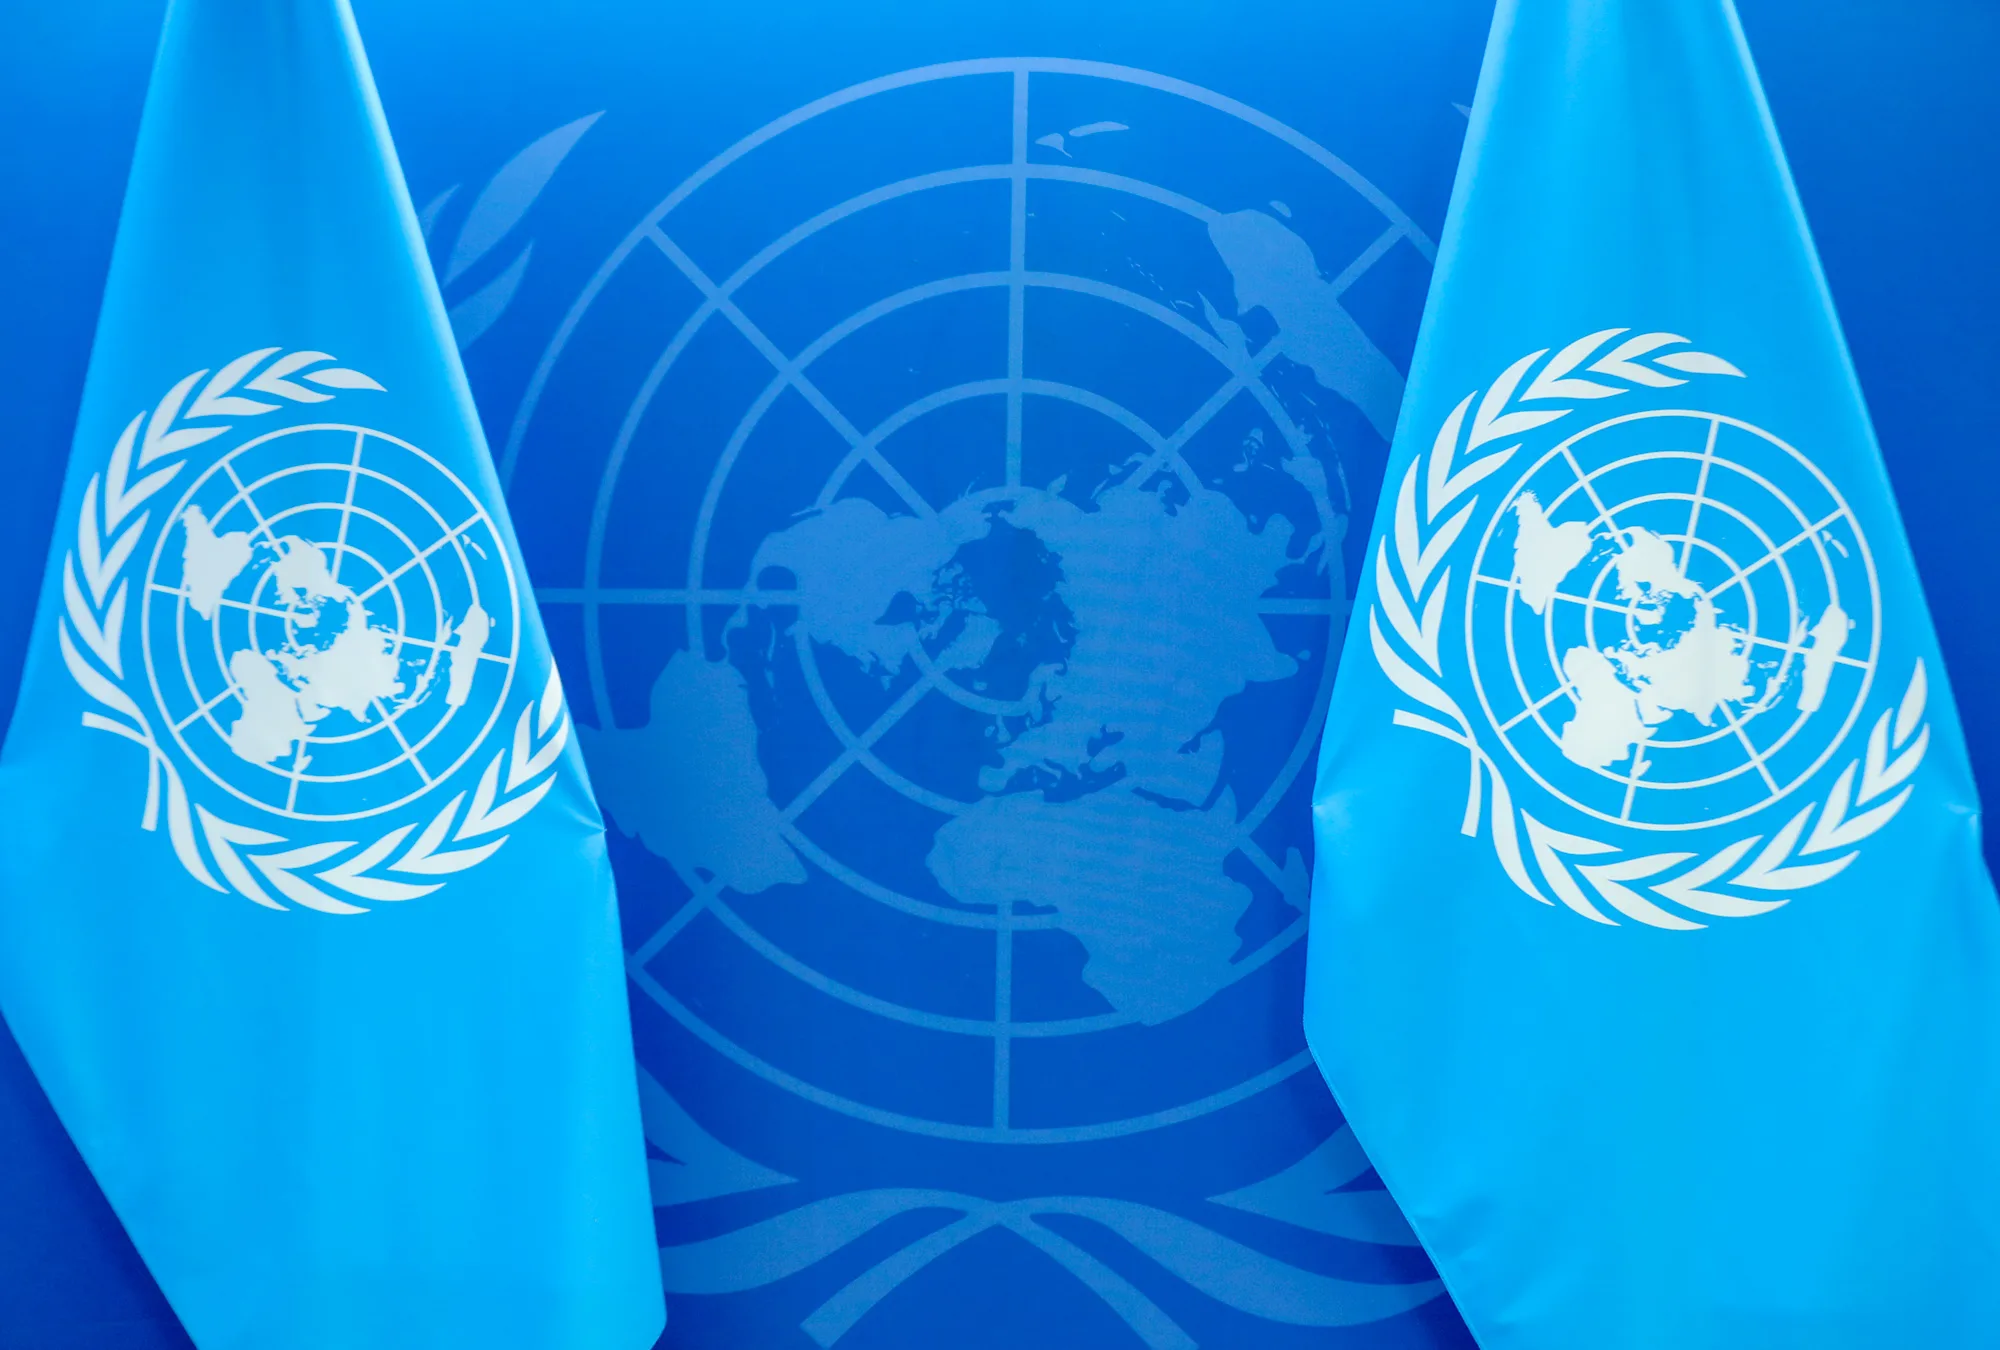 ONU sube expectativa de crecimiento global 3 décimas, a 2.7%